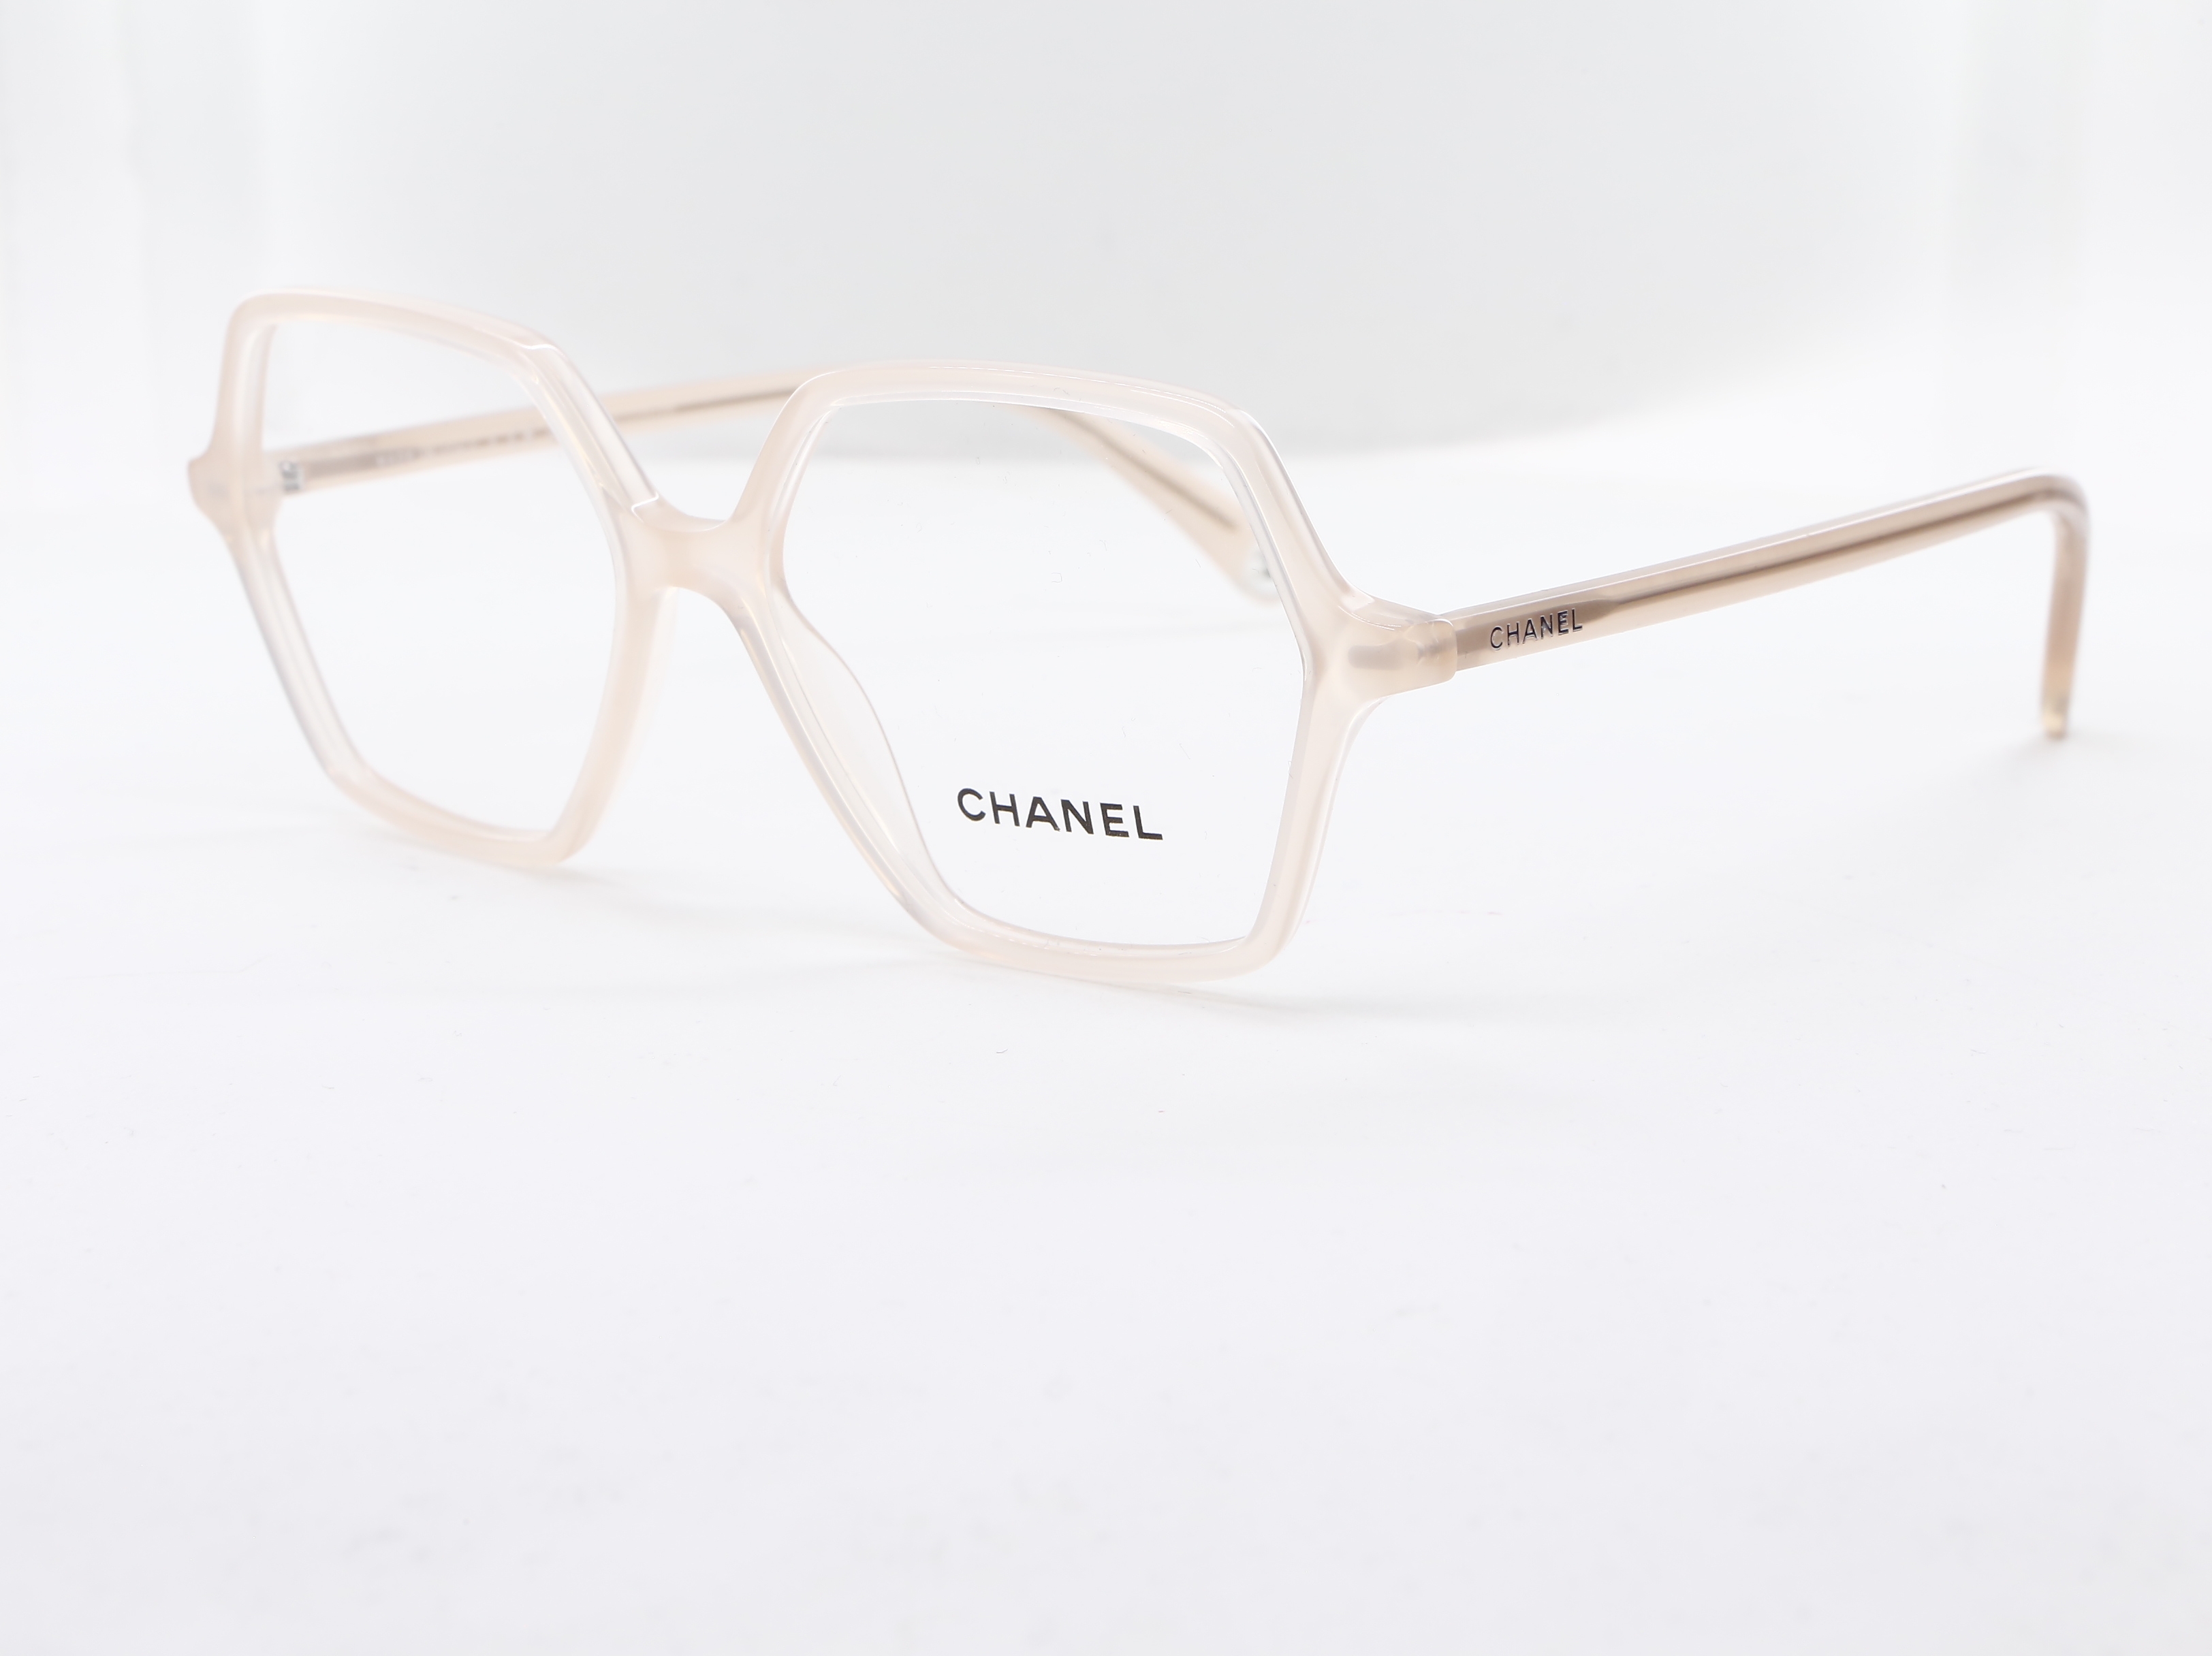 Chanel - ref: 89426